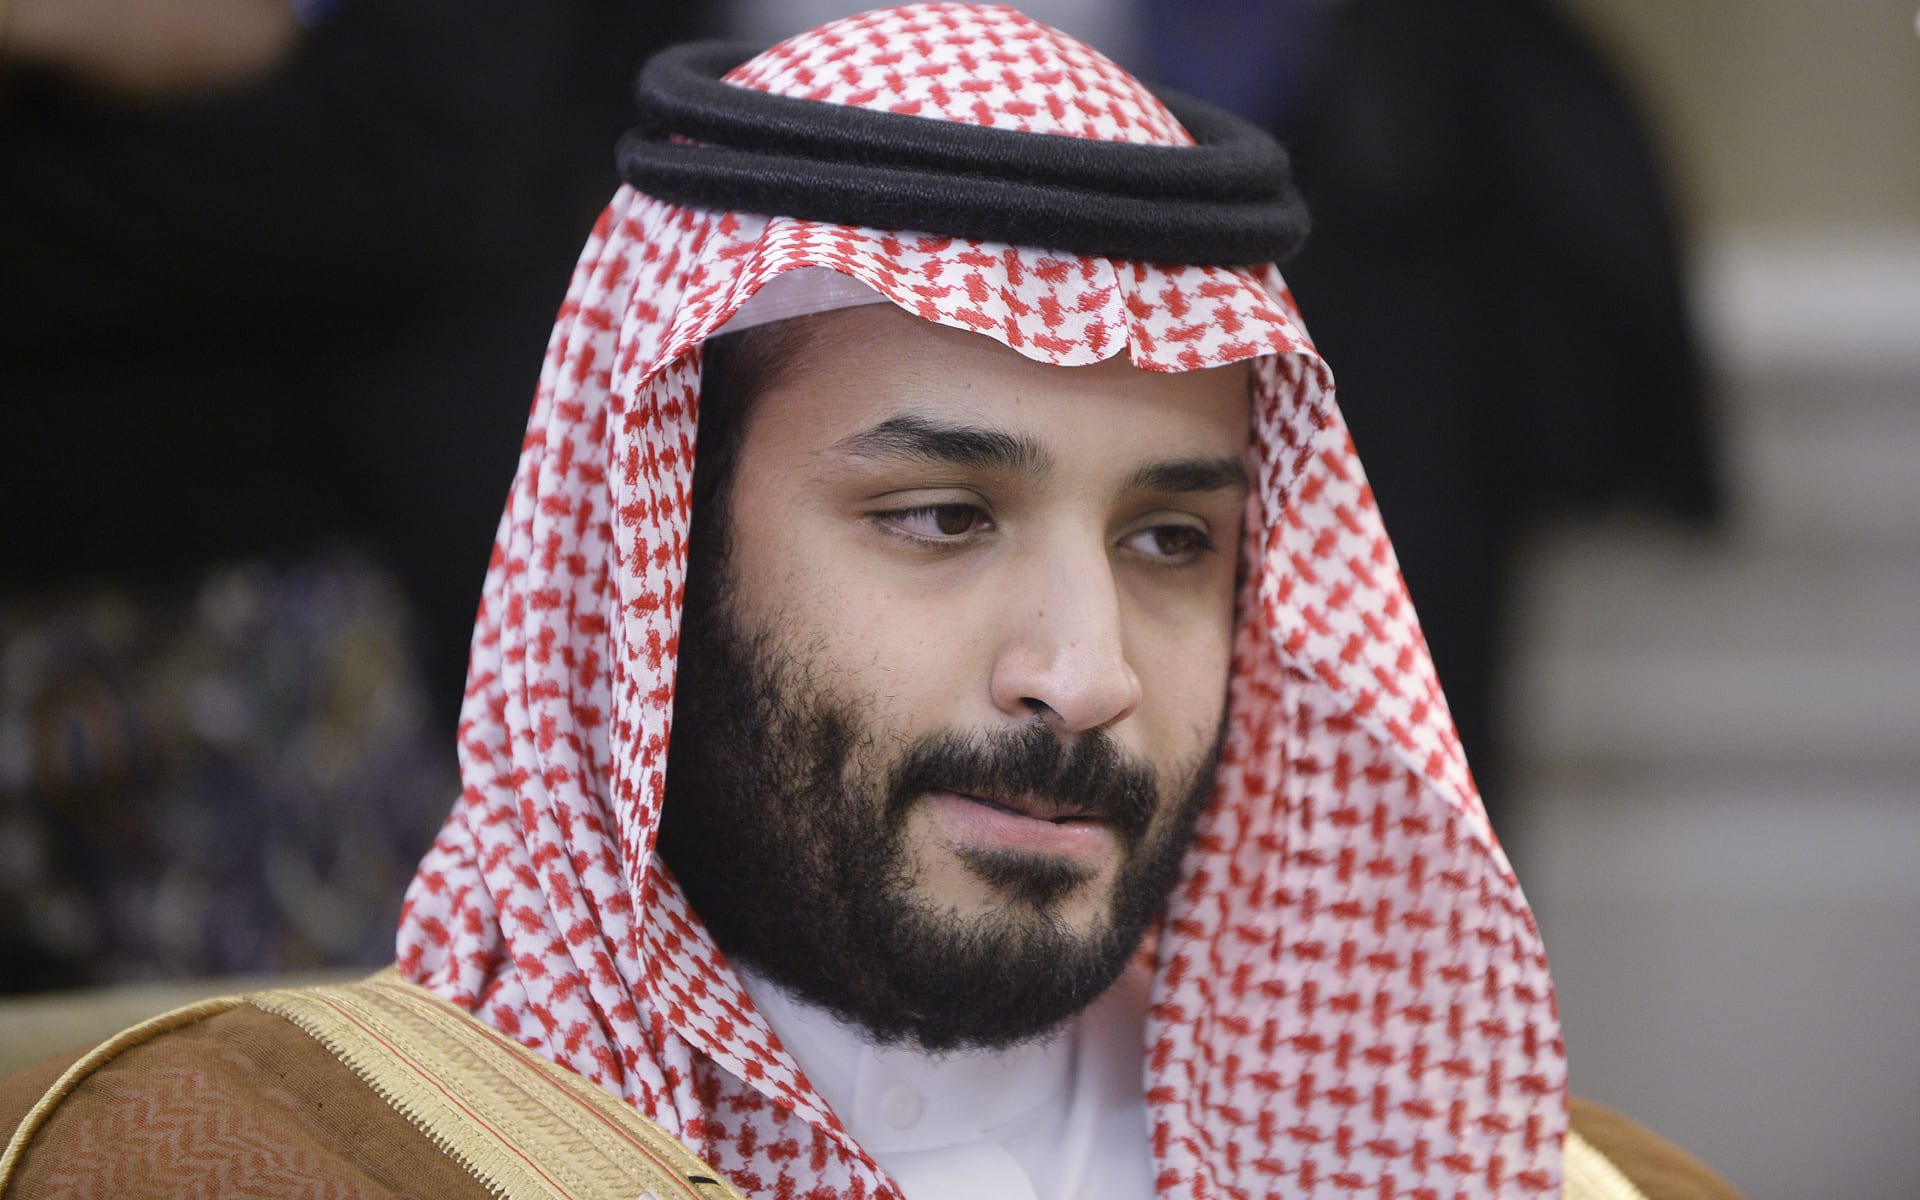 الأمير محمد بن سلمان عن "رؤية المملكة": سيُطرح من أرامكو أقل من 5% وسنحول دخل السعودية من النفط إلى الاستثمار